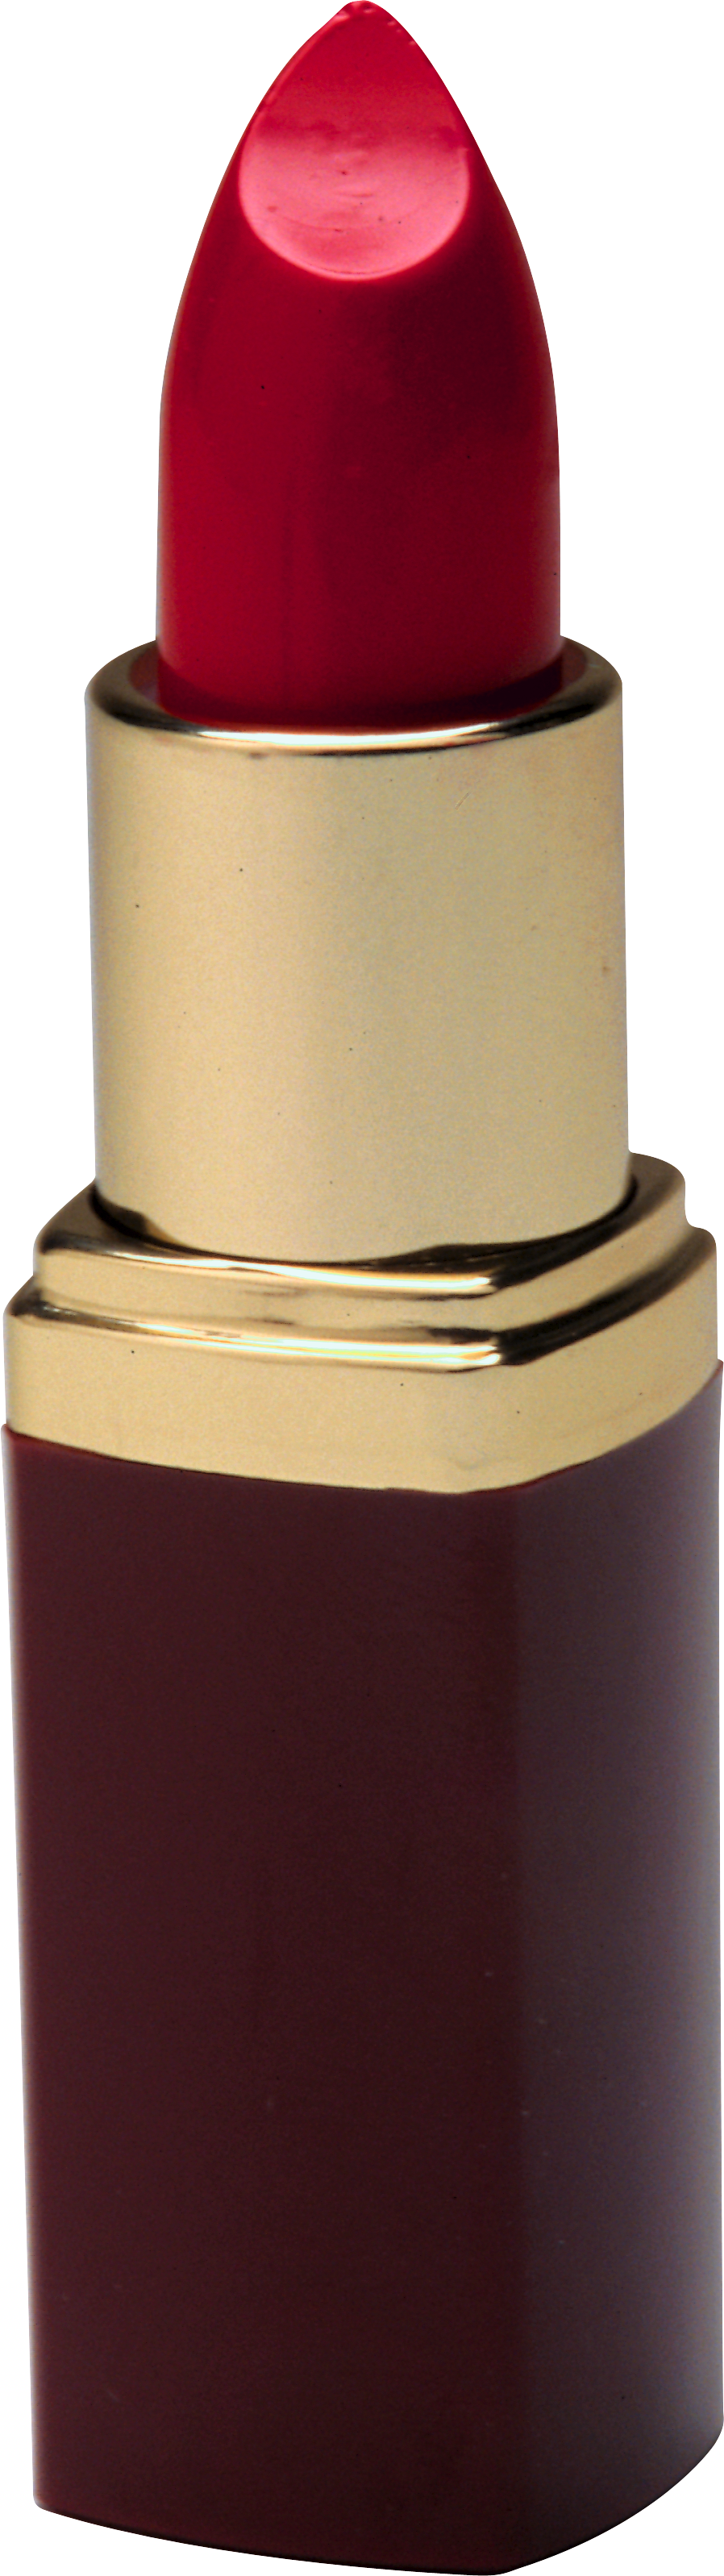 Makeup Lipsticks Transparent Free PNG